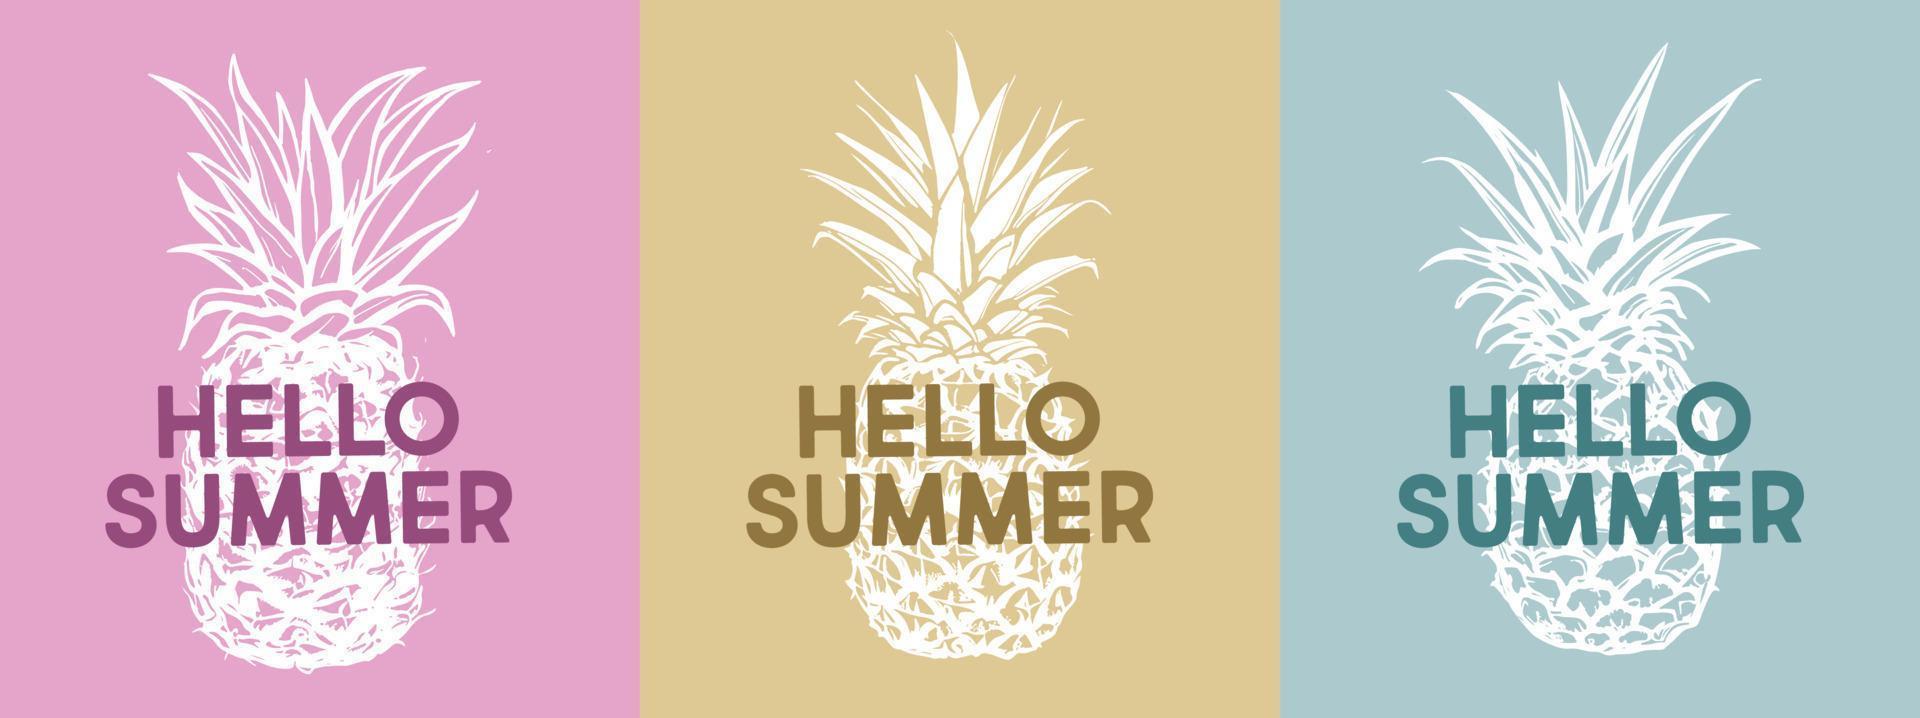 Hallo Sommer, Ananas, Hand gezeichnet Abbildungen vektor